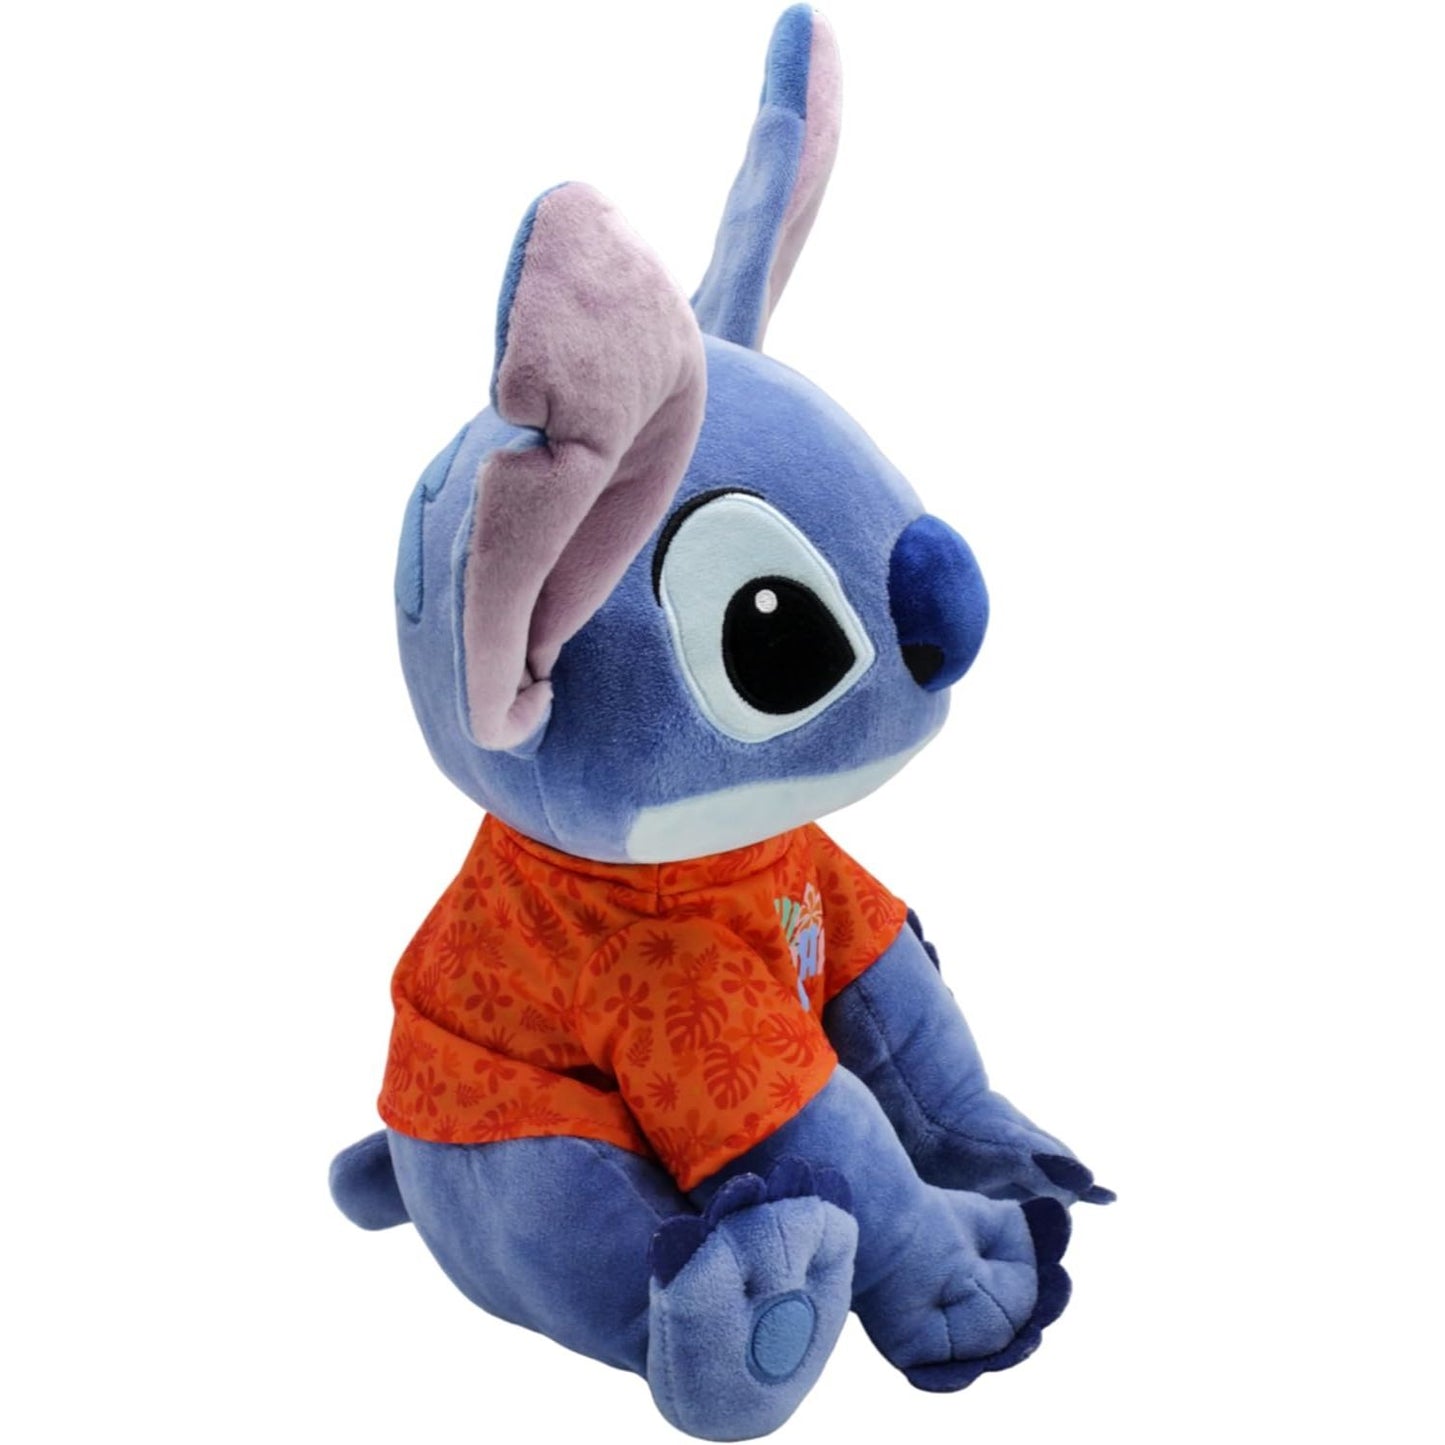 Disney - Lilo & Stitch - Stitch with T-Shirt Plush - 15 Inch